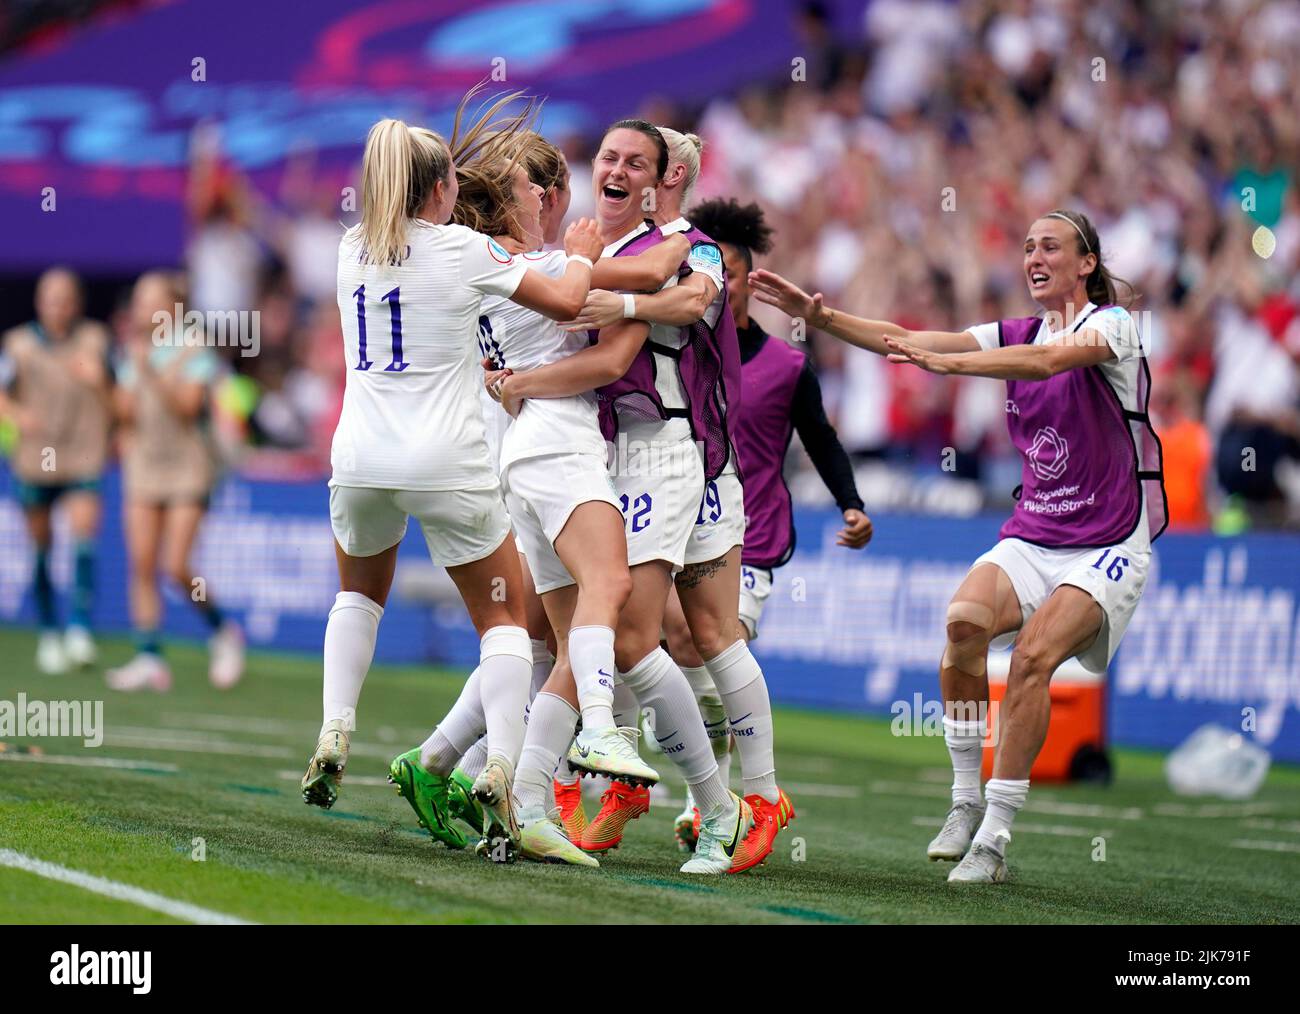 La inglesa Ella Toone celebra el gol de apertura con sus compañeros de equipo durante la final de la UEFA Women's Euro 2022 en el estadio de Wembley, Londres. Fecha de la foto: Domingo 31 de julio de 2022. Foto de stock